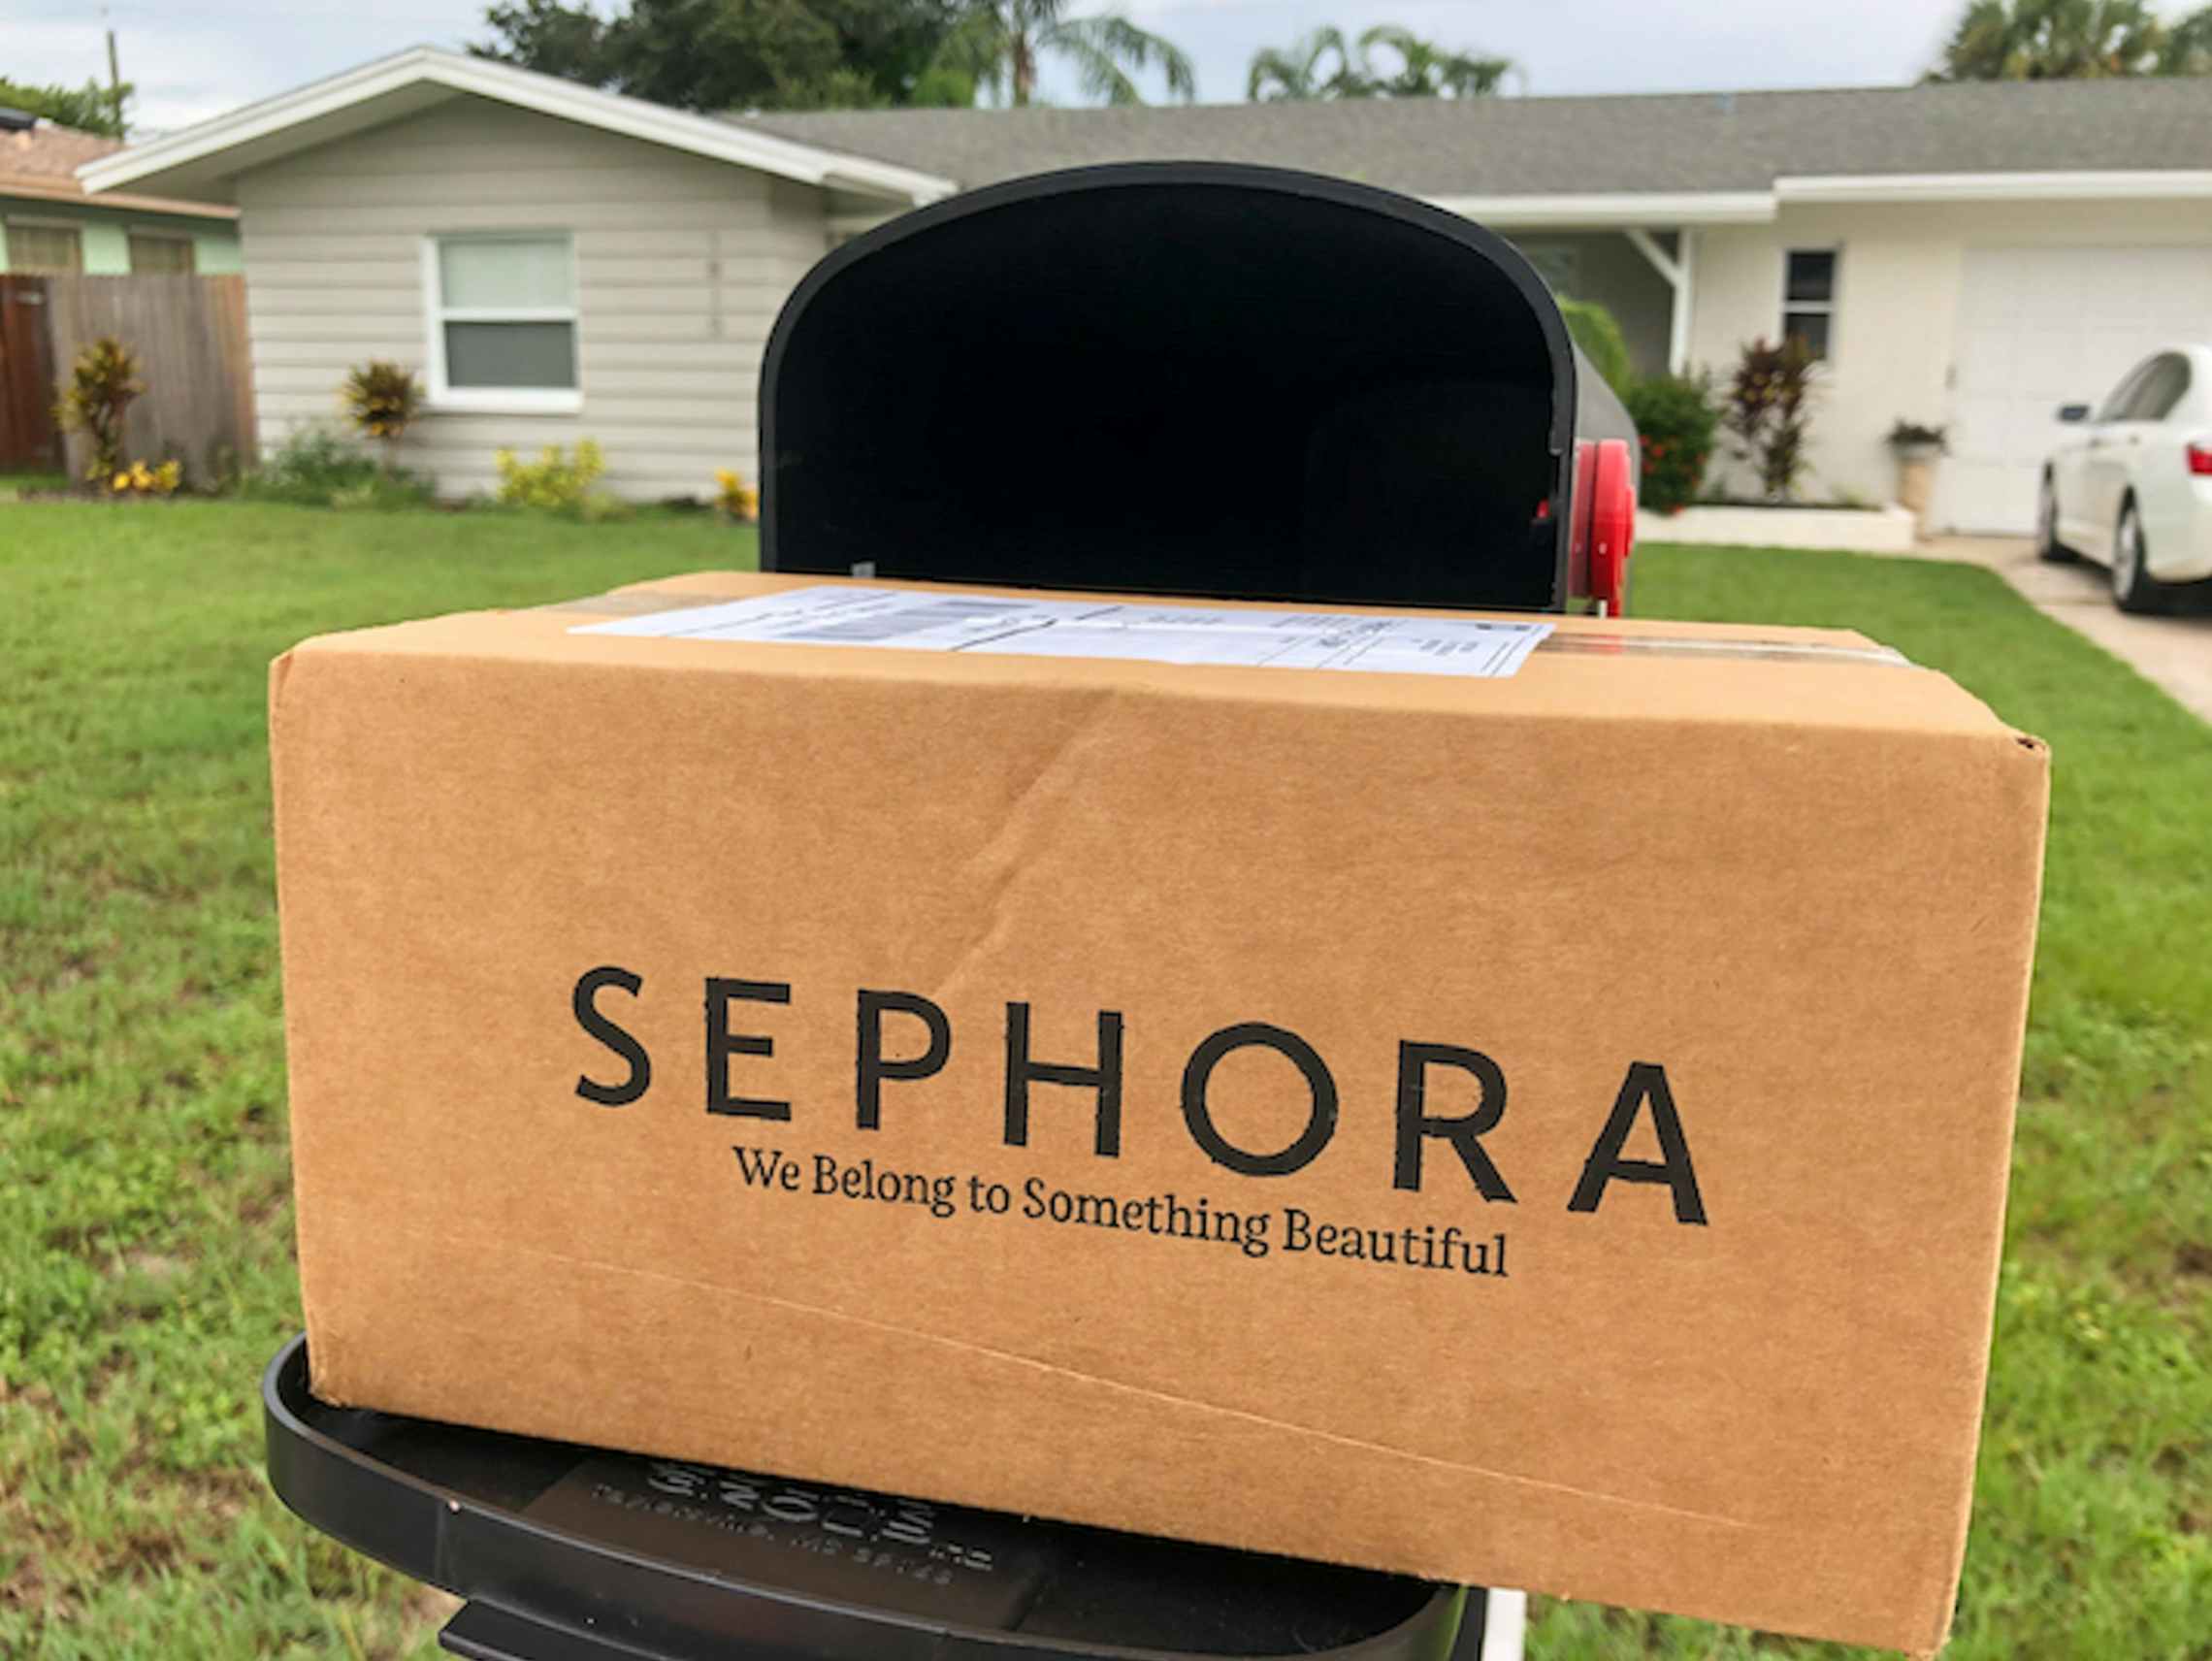 Sephora box at a mail box